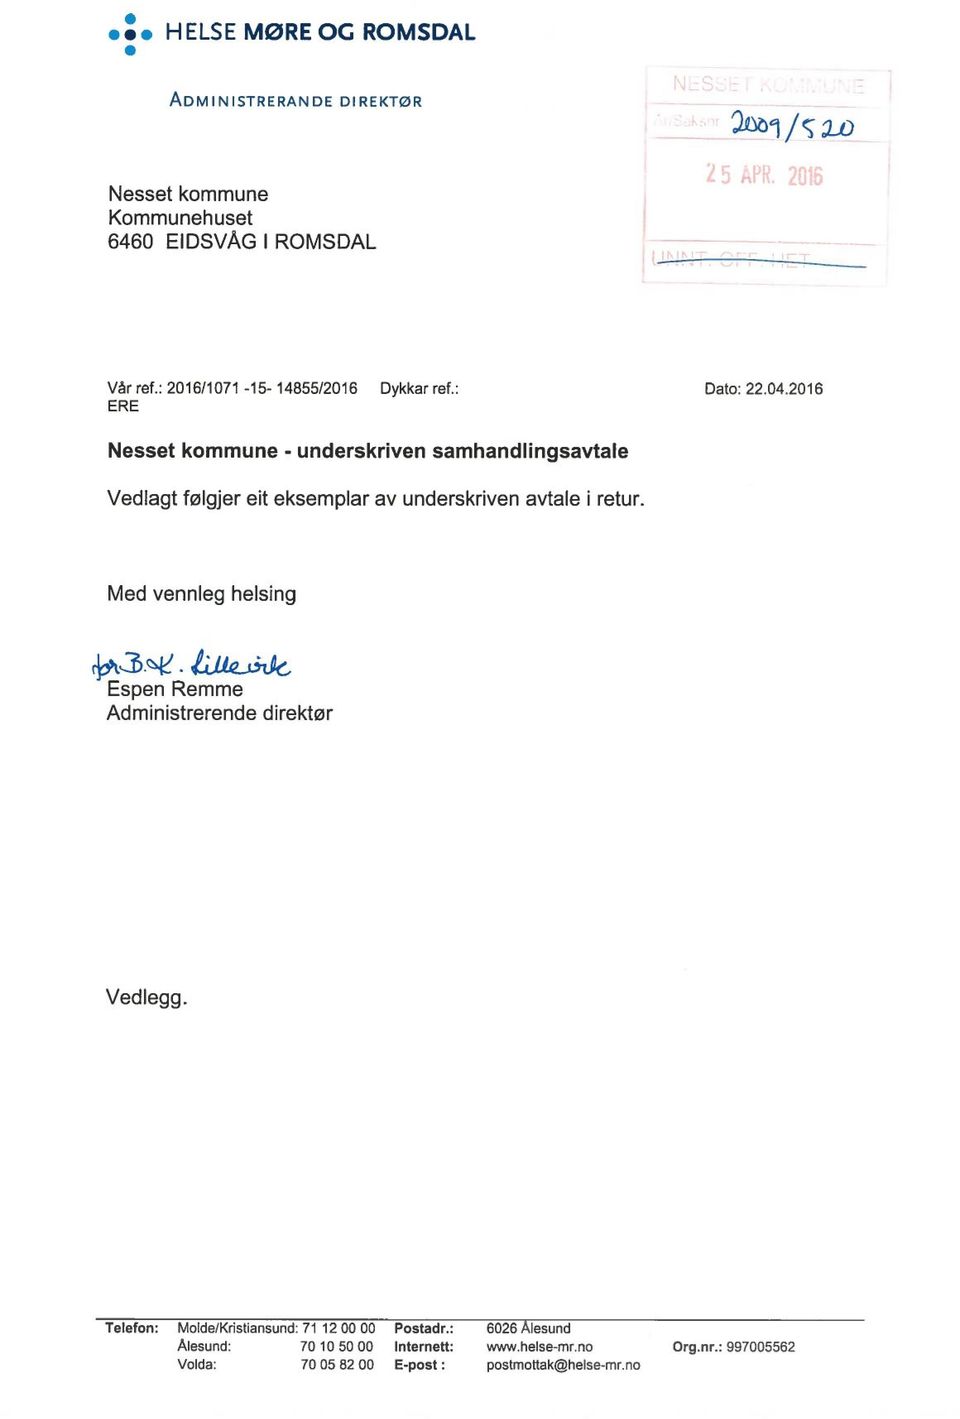 2016 Nesset kommune - underskriven samhandlingsavtale Vedlagt følgjer eit eksemplar av underskriven avtale i retur.